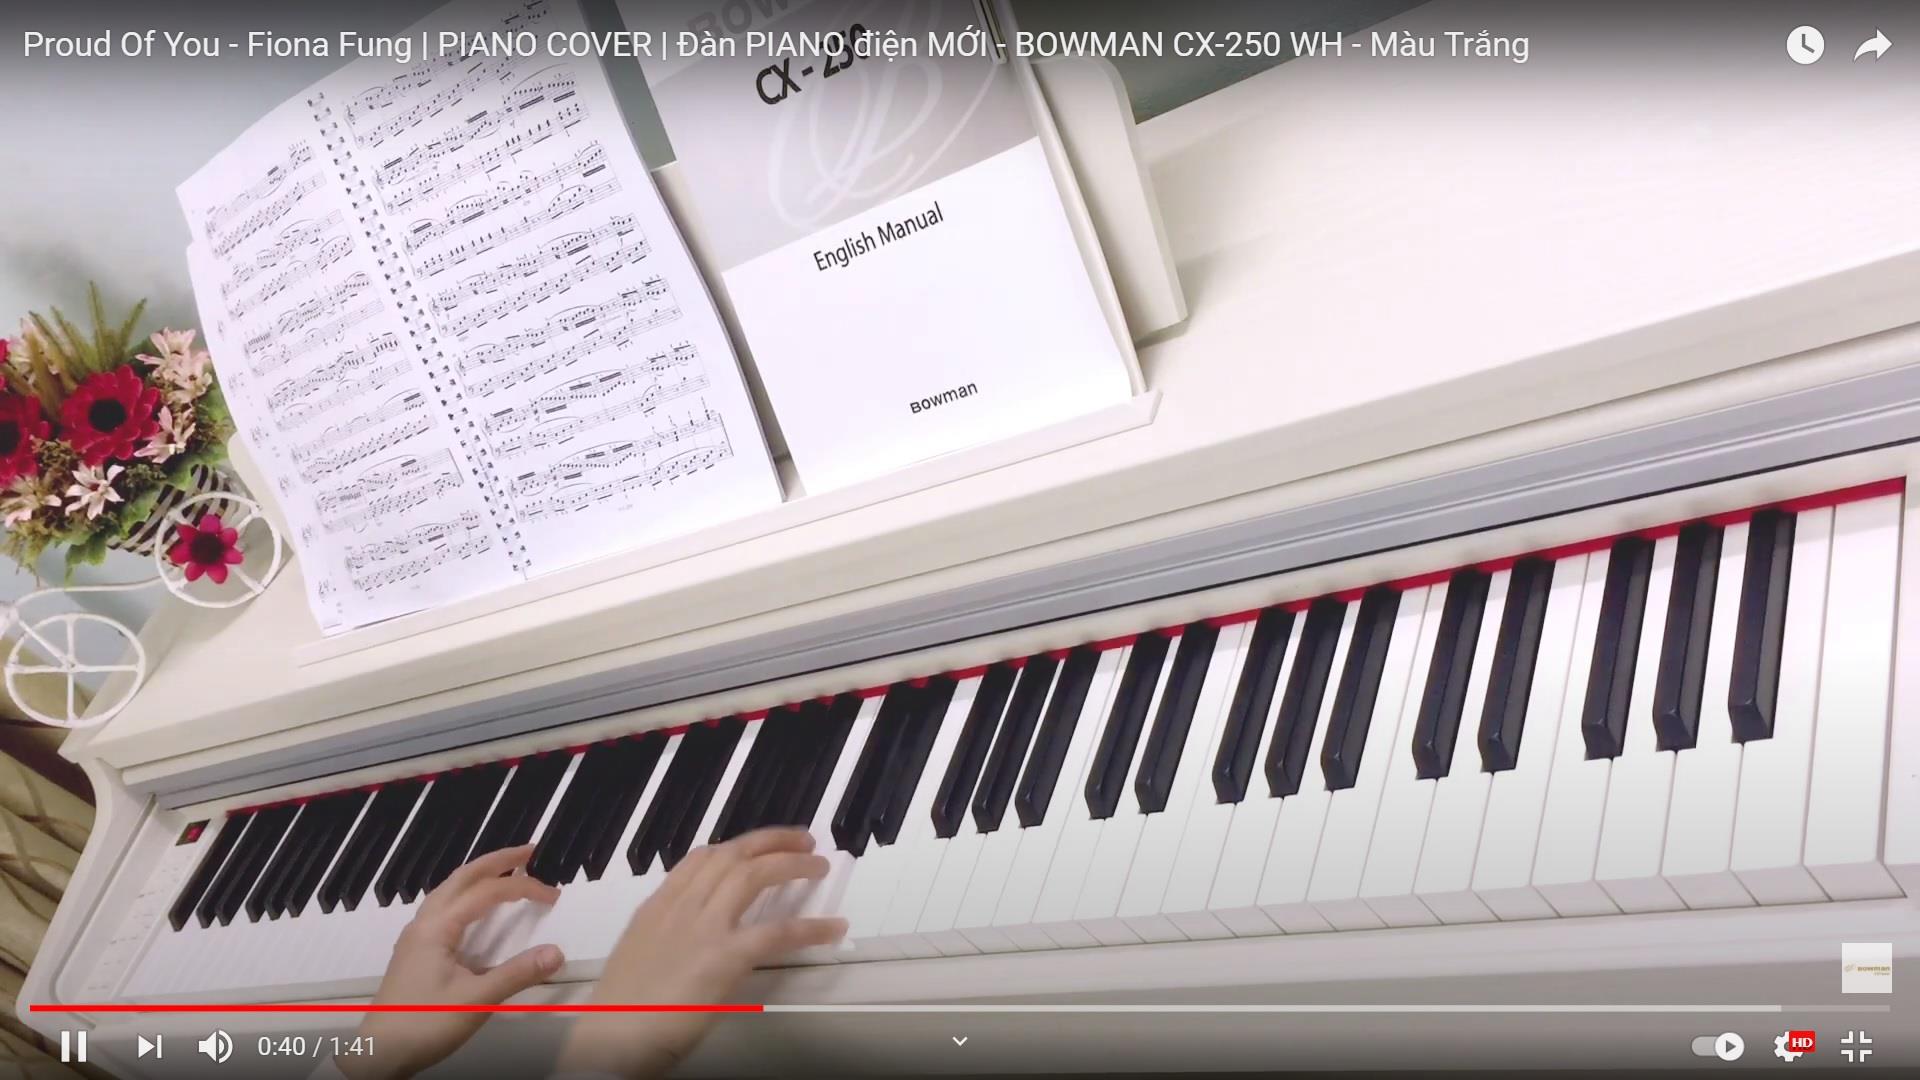 Proud Of You - Fiona Fung | PIANO COVER | Đàn PIANO điện MỚI - BOWMAN CX-250 WH - Màu Trắng